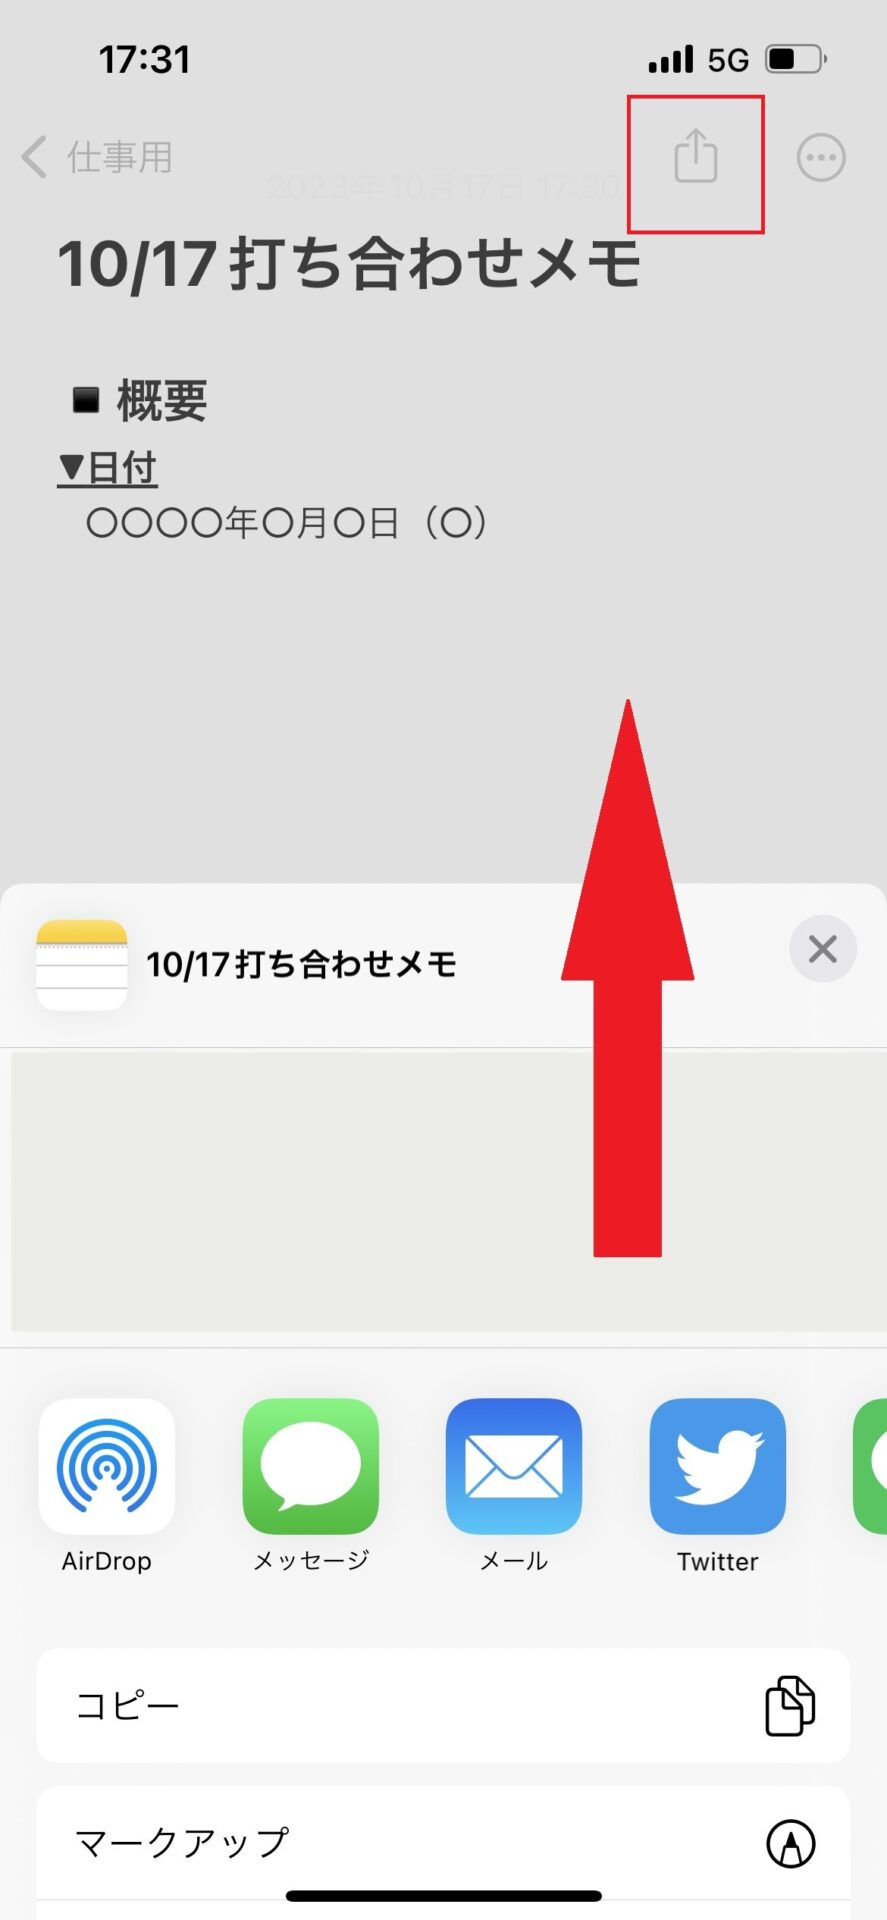 メモアプリの共有ボタンを押した画面